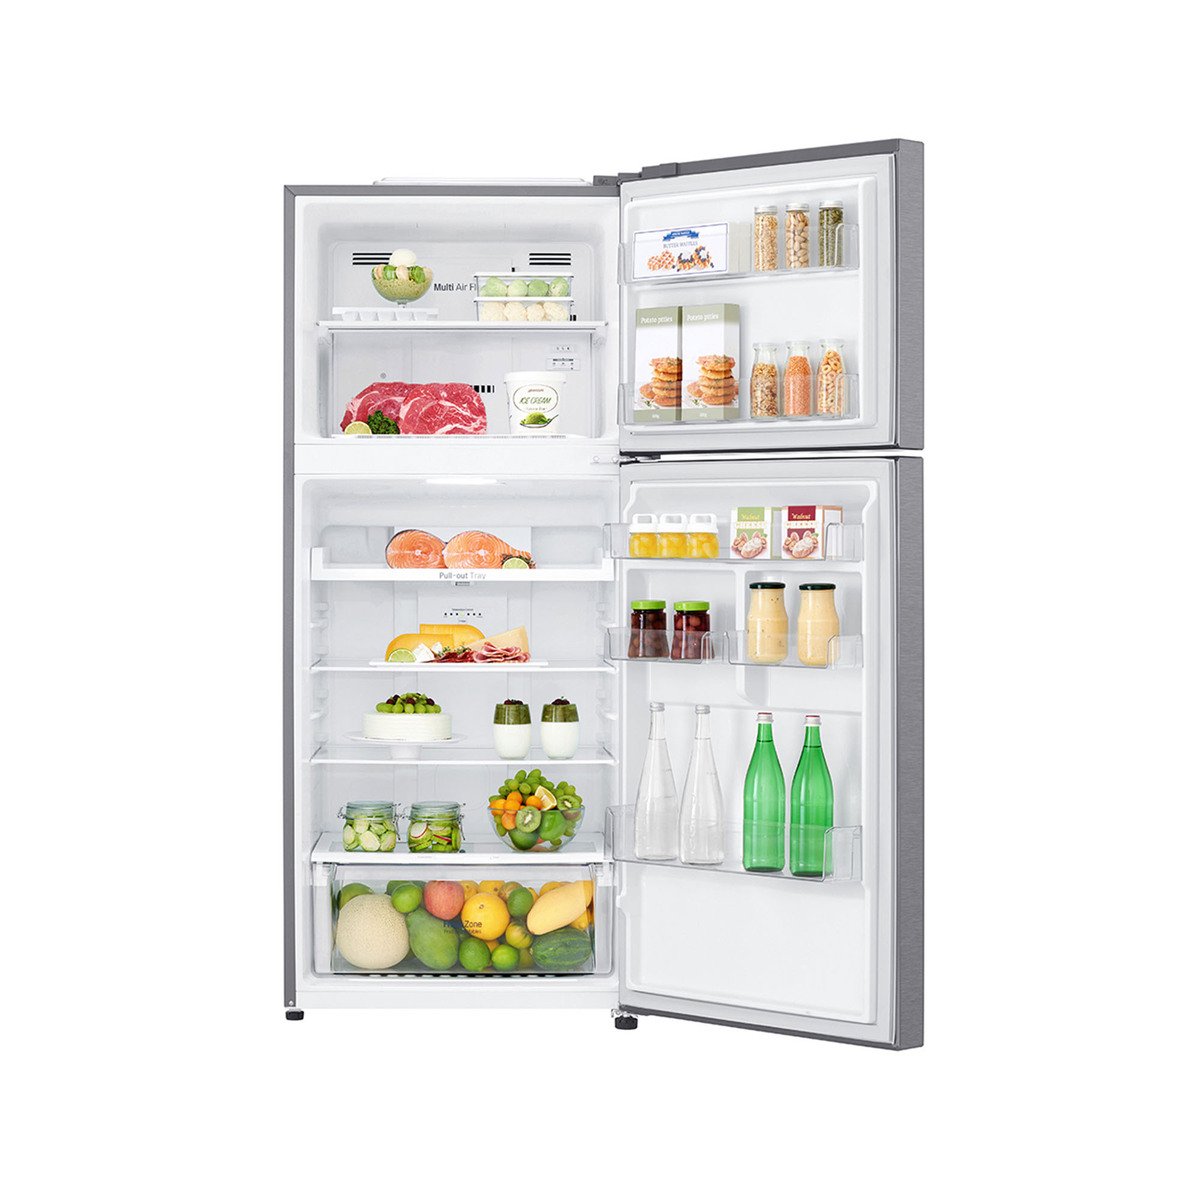 LG Double Door Refrigerator LT15GBBDIN 394LTR